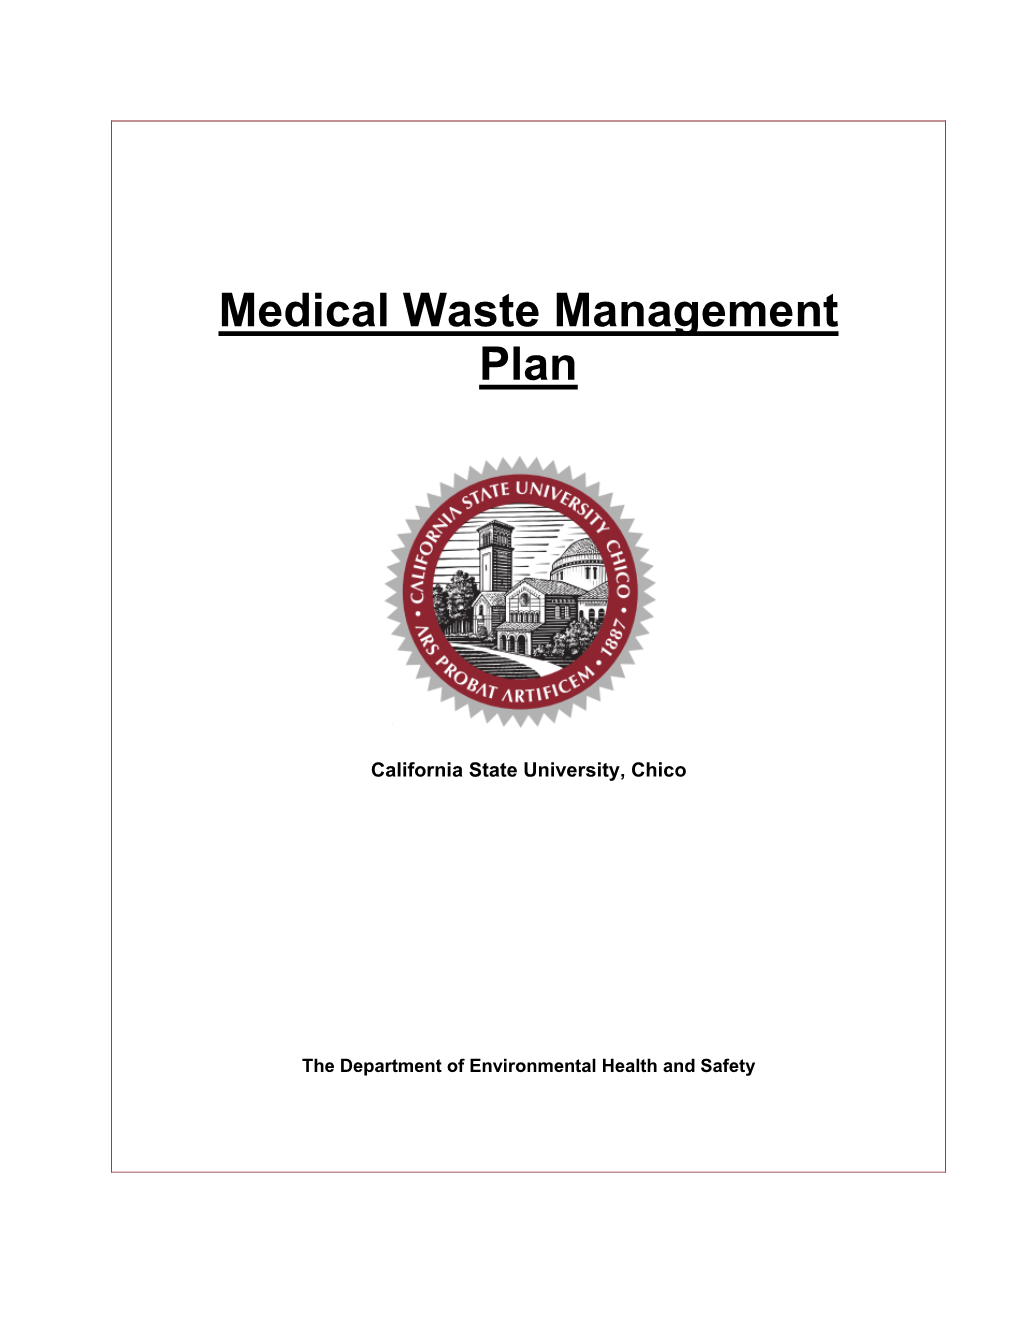 Medical Waste Management Plan